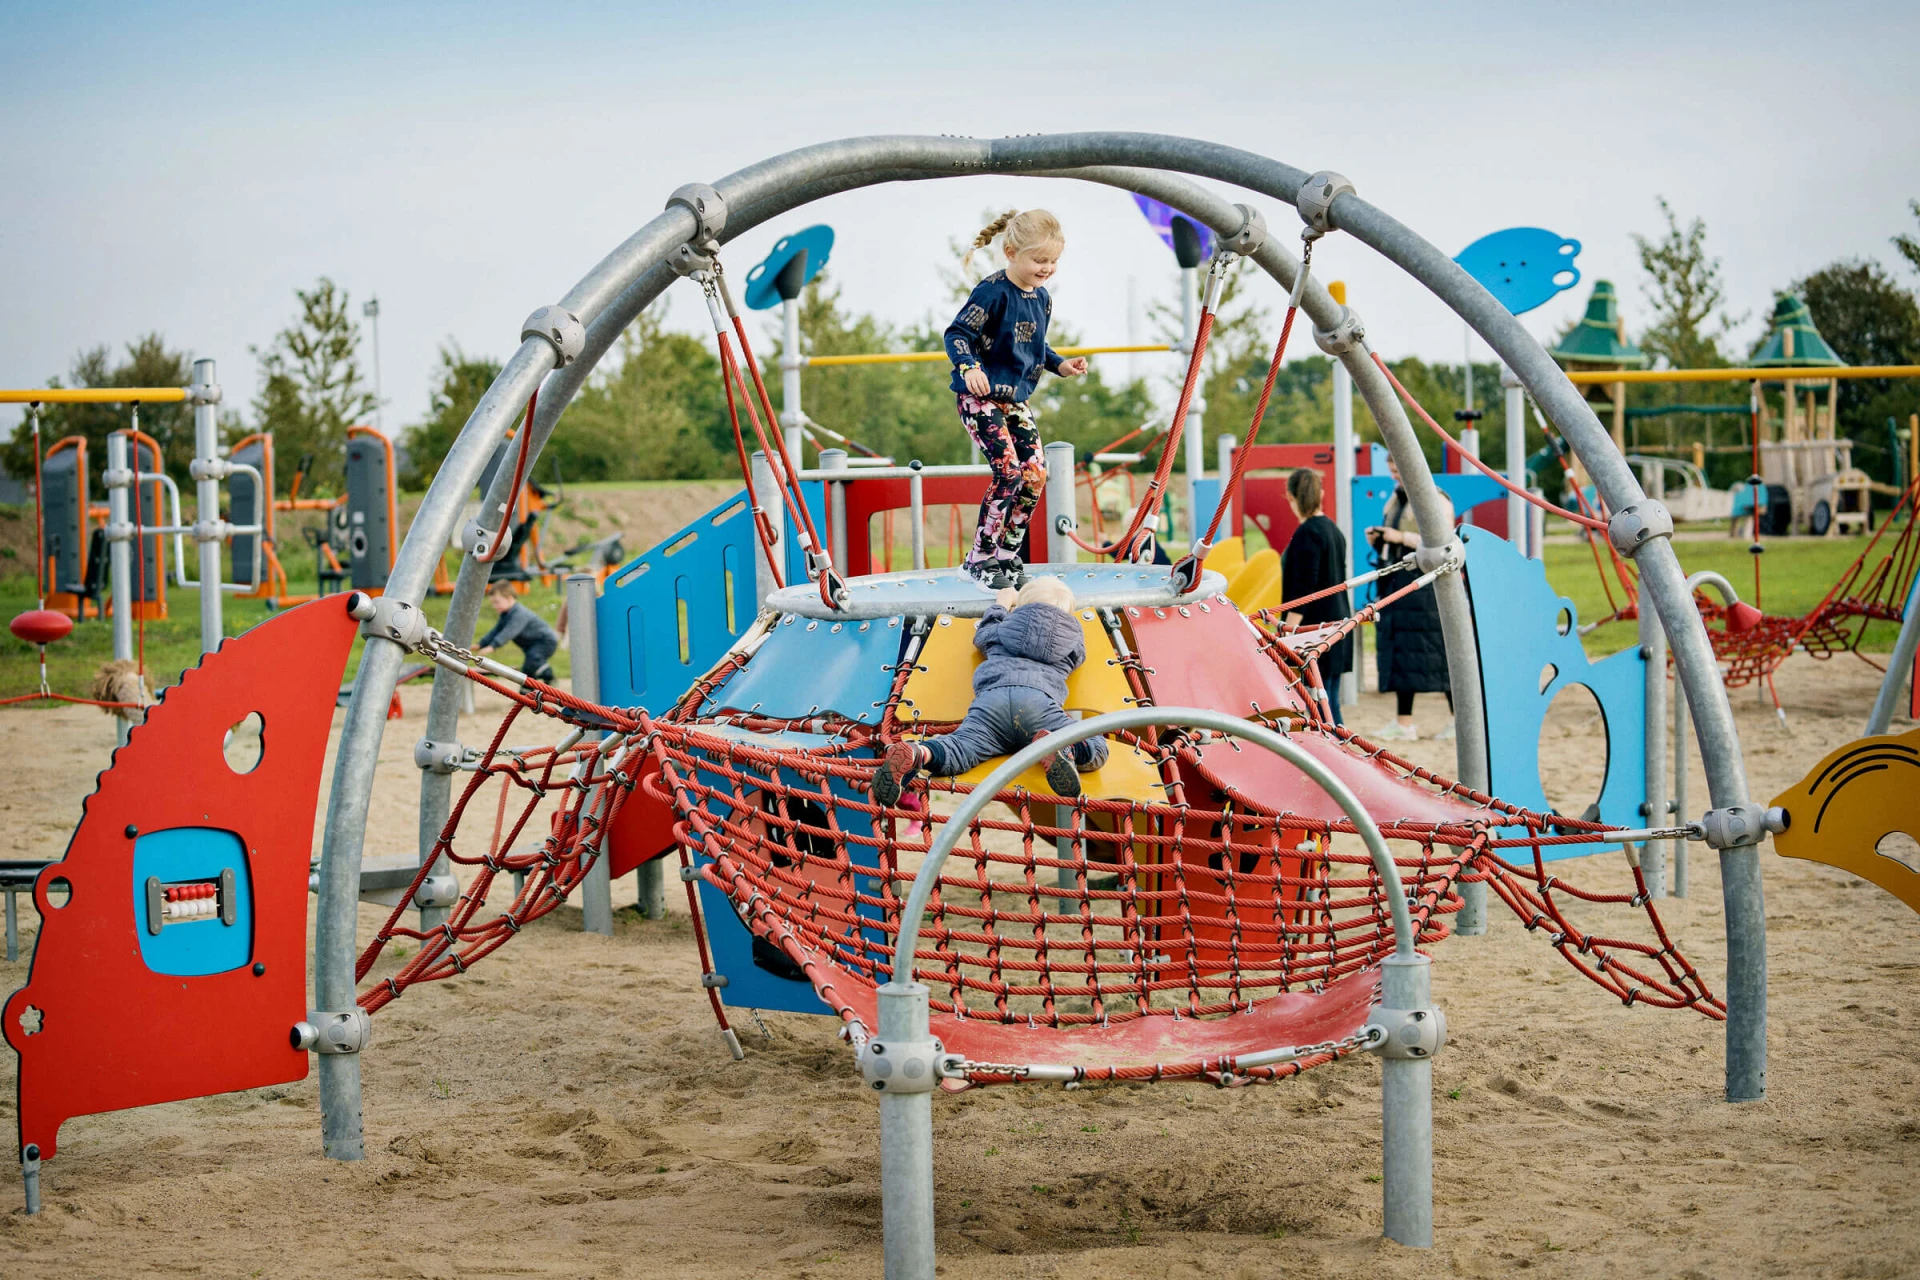 niños jugando en el parque infantil cúpulas de escalada para niños pequeños